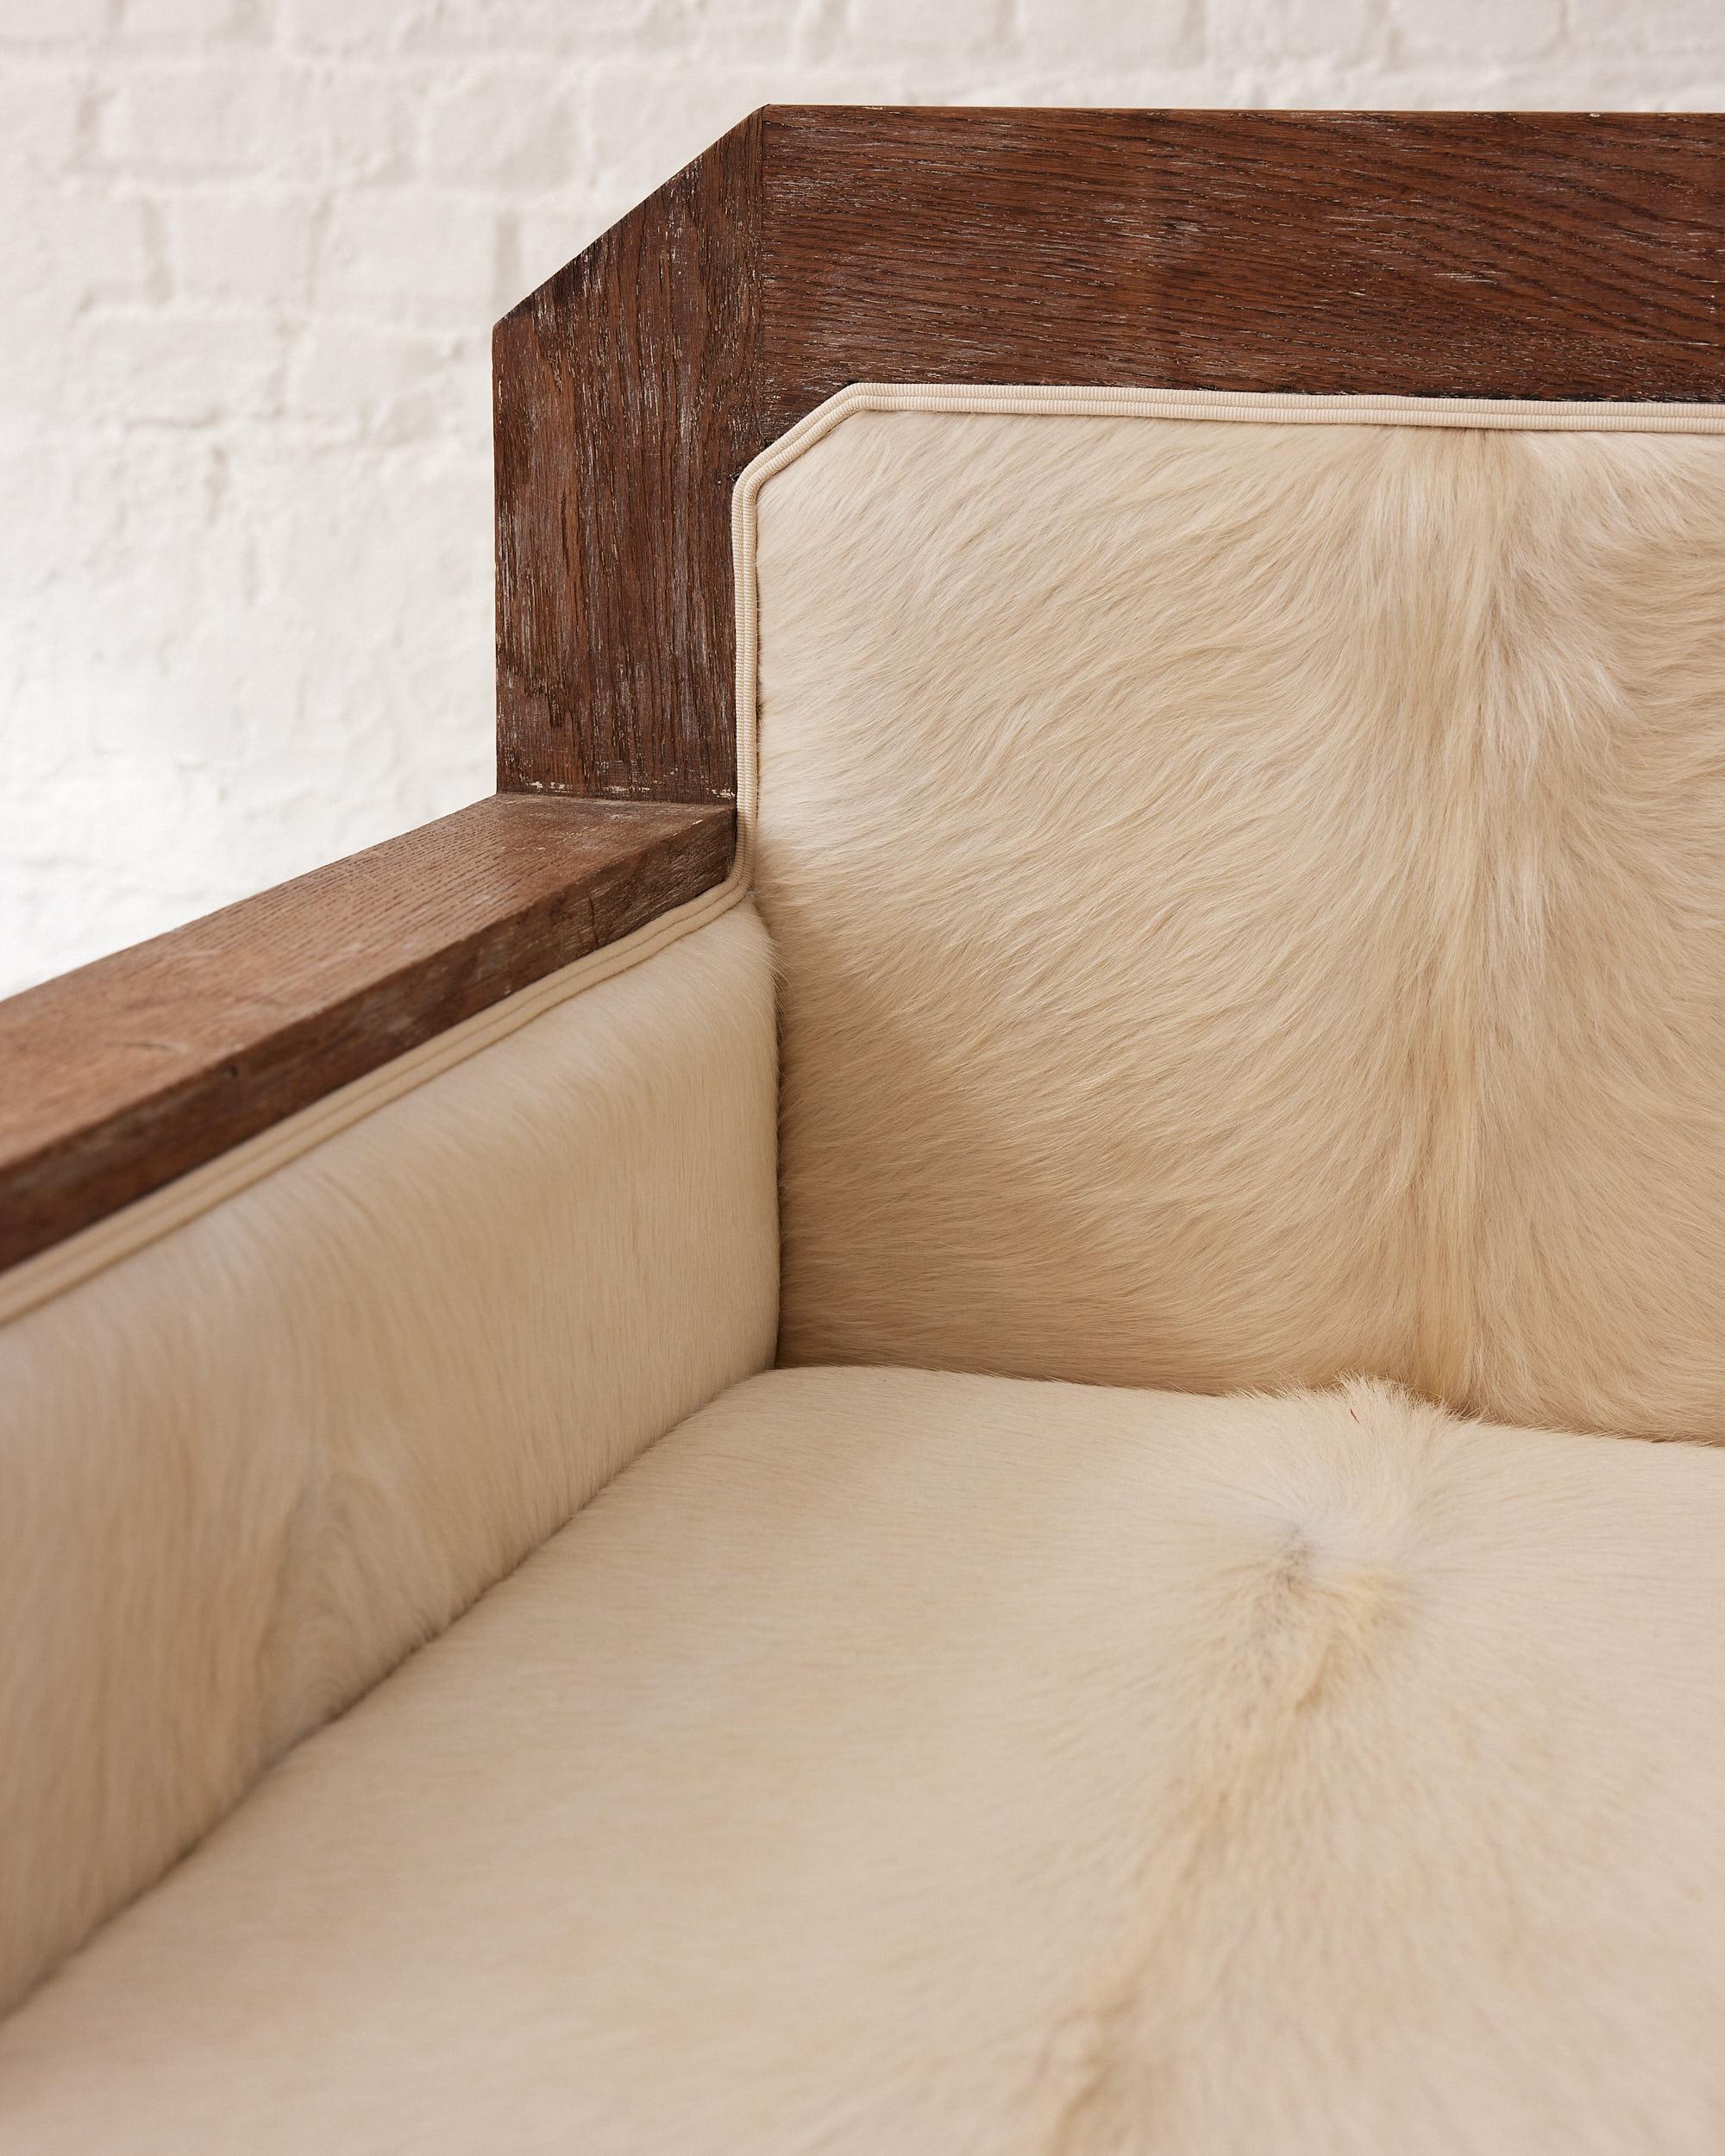 Le fauteuil Art déco Cow Skin Club Ceruse Oak Armchair est un chef-d'œuvre de design et d'artisanat, importé de France avec les matériaux les plus fins et la plus grande précision. Le superbe motif en peau de vache noir et blanc du fauteuil est à la